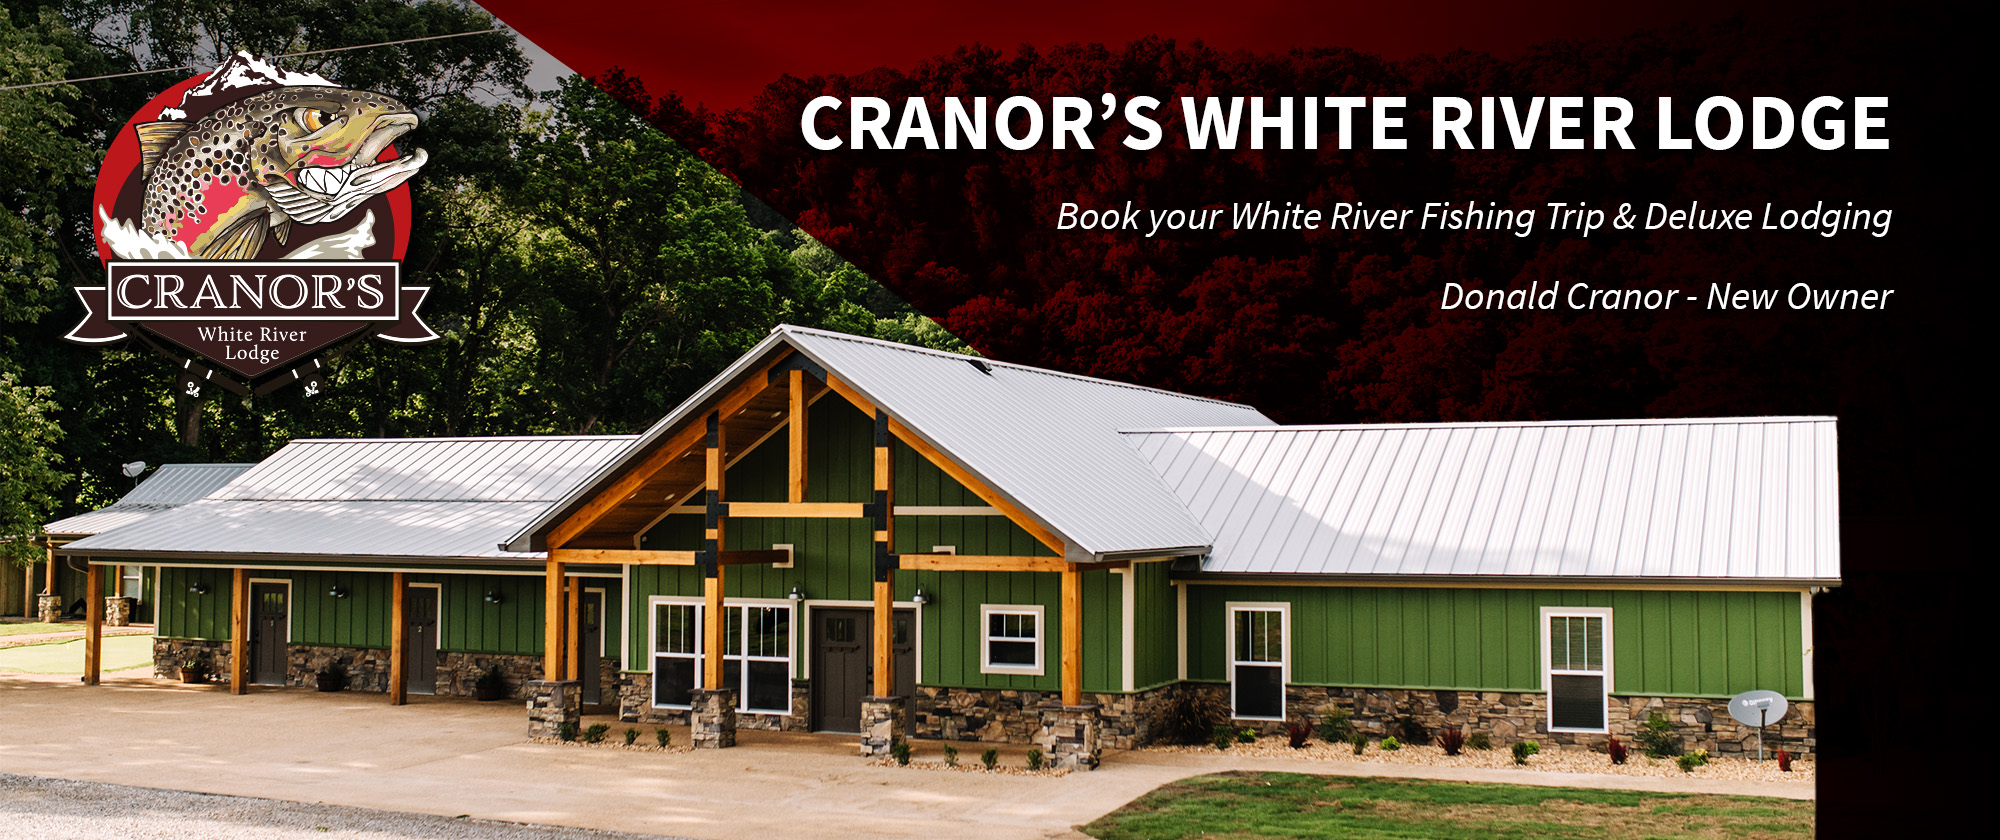 Cranor's White River Lodge